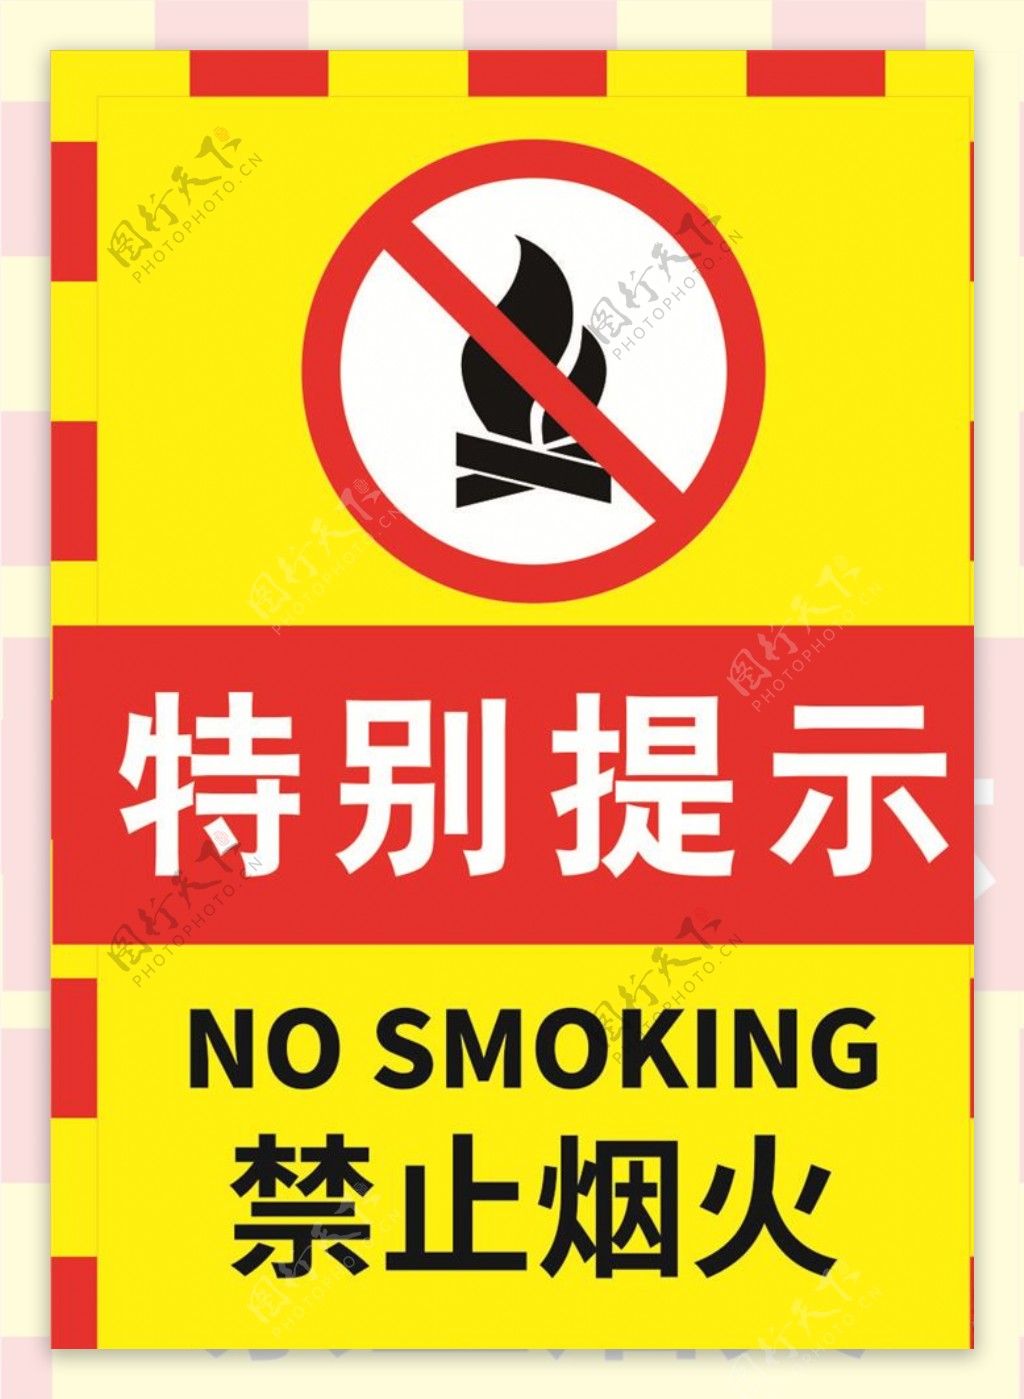 禁止烟火标志